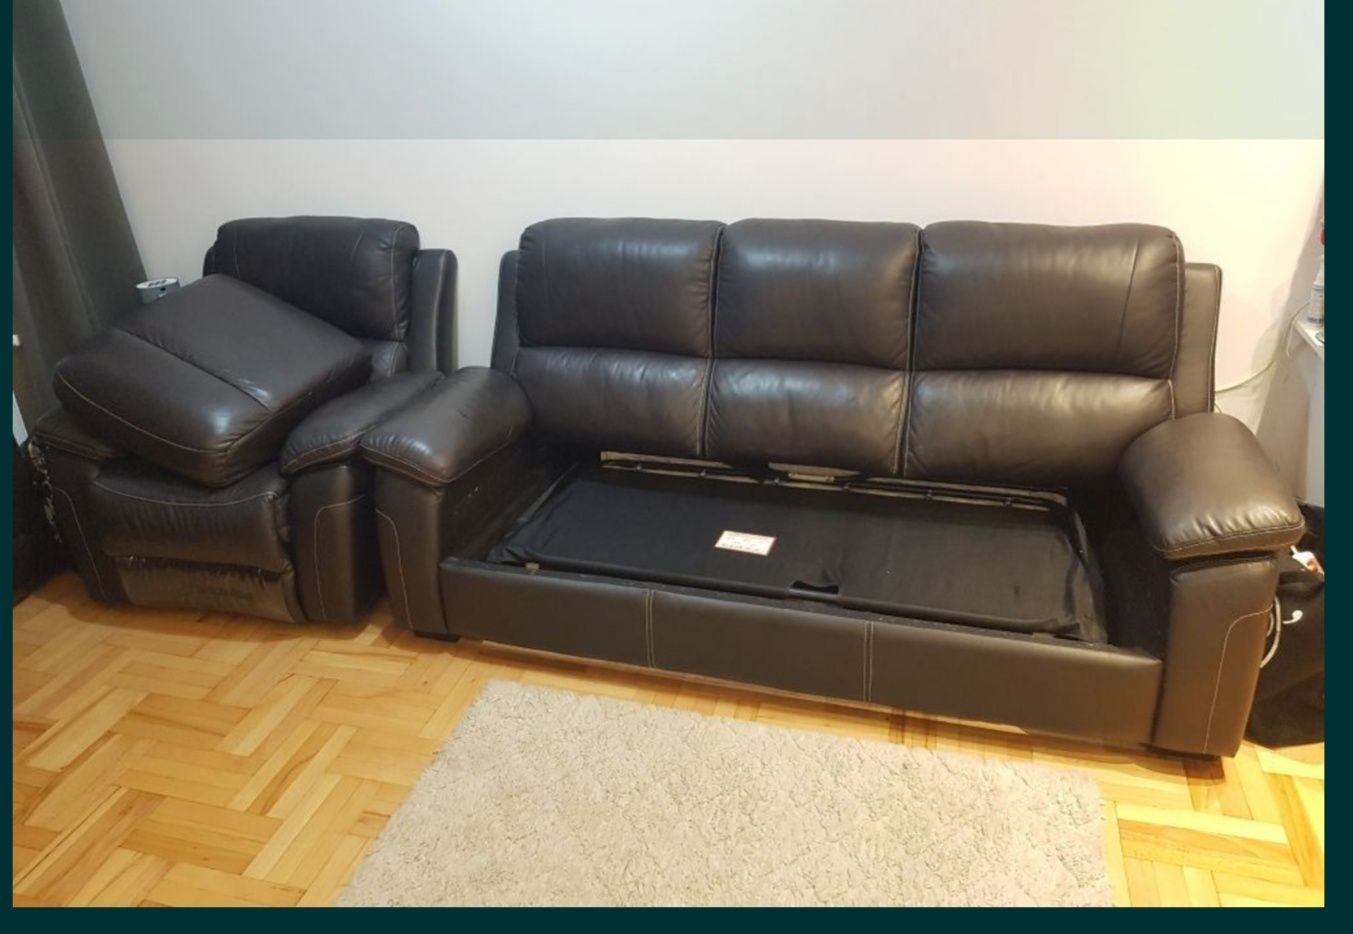 OKAZJA. Komplet wypoczynkowy MJW CONCEPT. Sofa + 2 fotele.